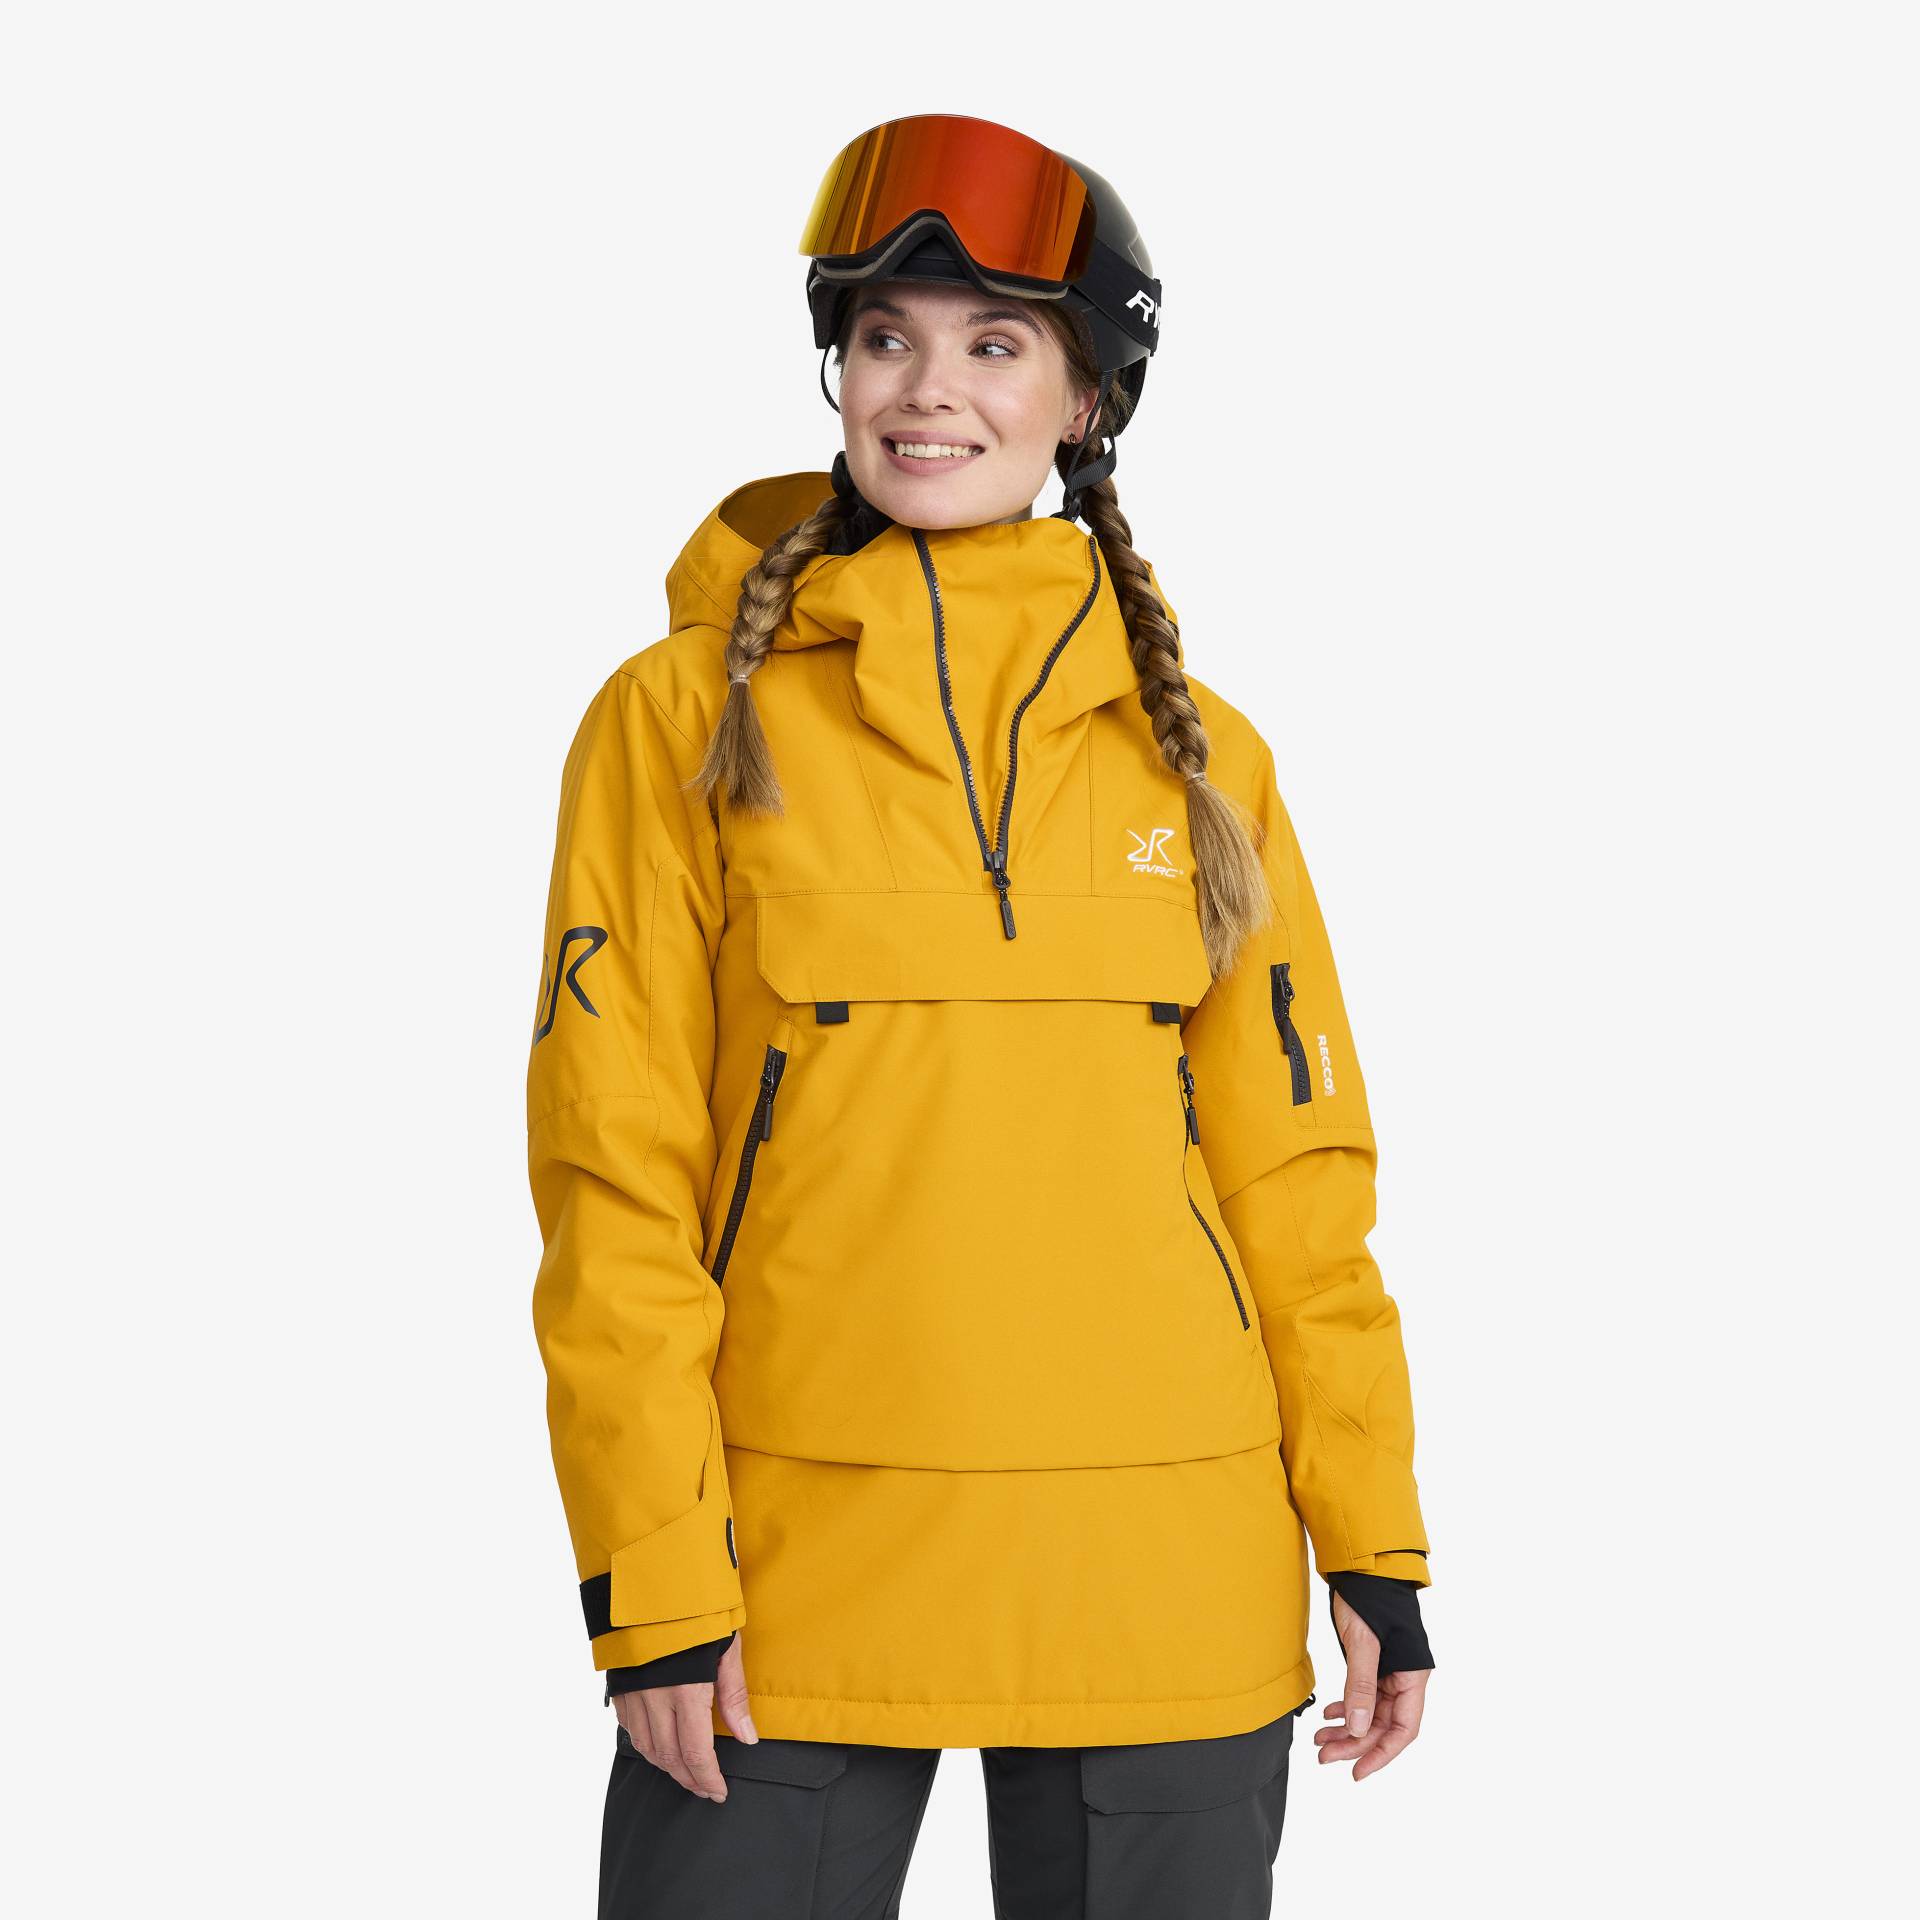 Halo 2L Insulated Ski Anorak Damen Golden Yellow, Größe:L - Skijacken von RevolutionRace